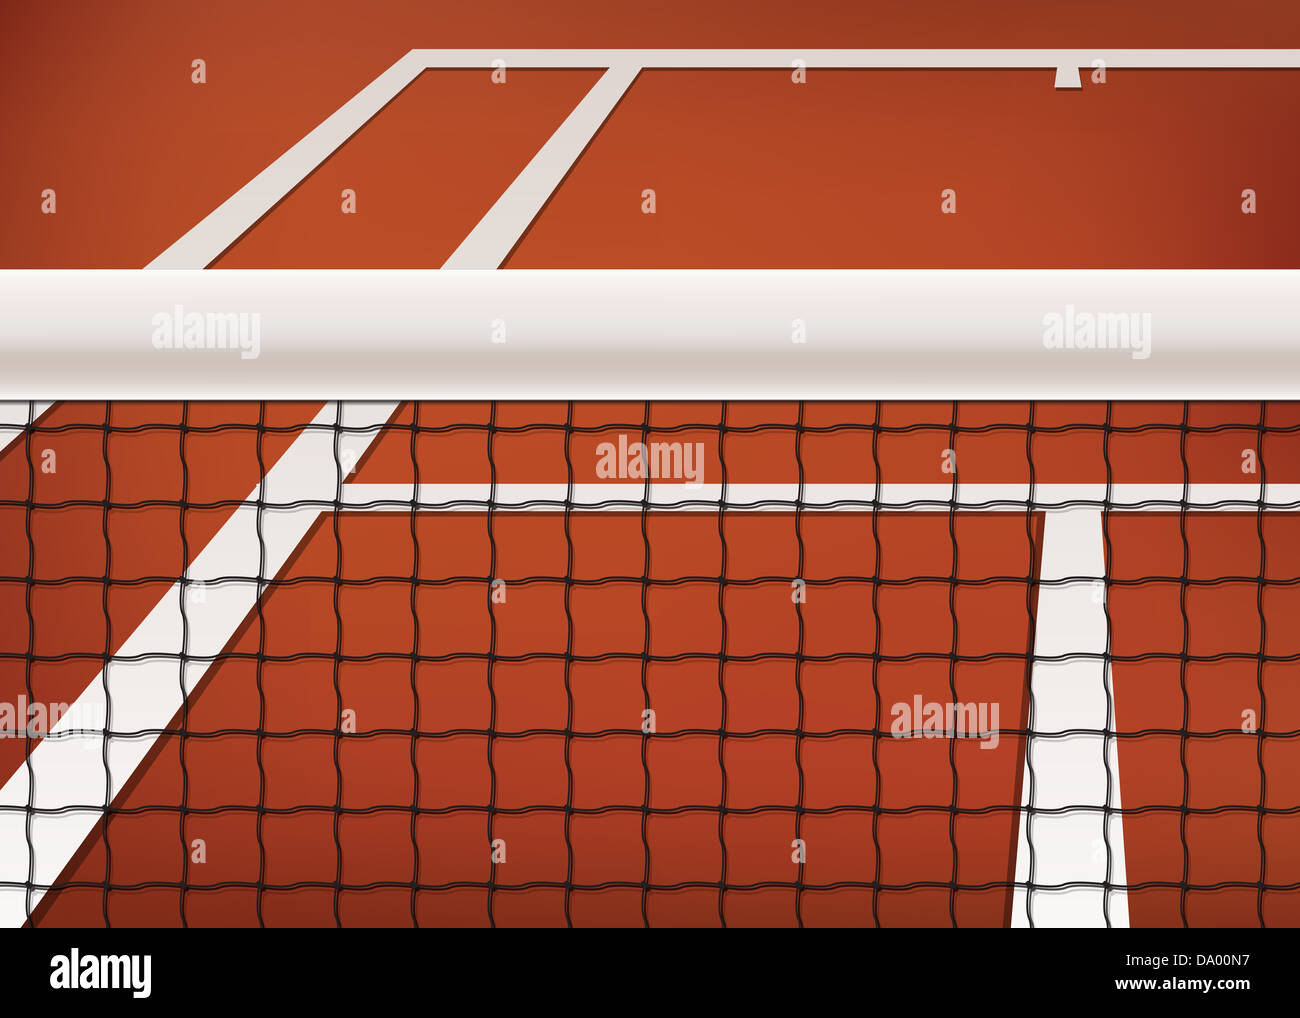 Tennis-Hintergrund, Sandplatz mit Netz und Linie Stockfoto